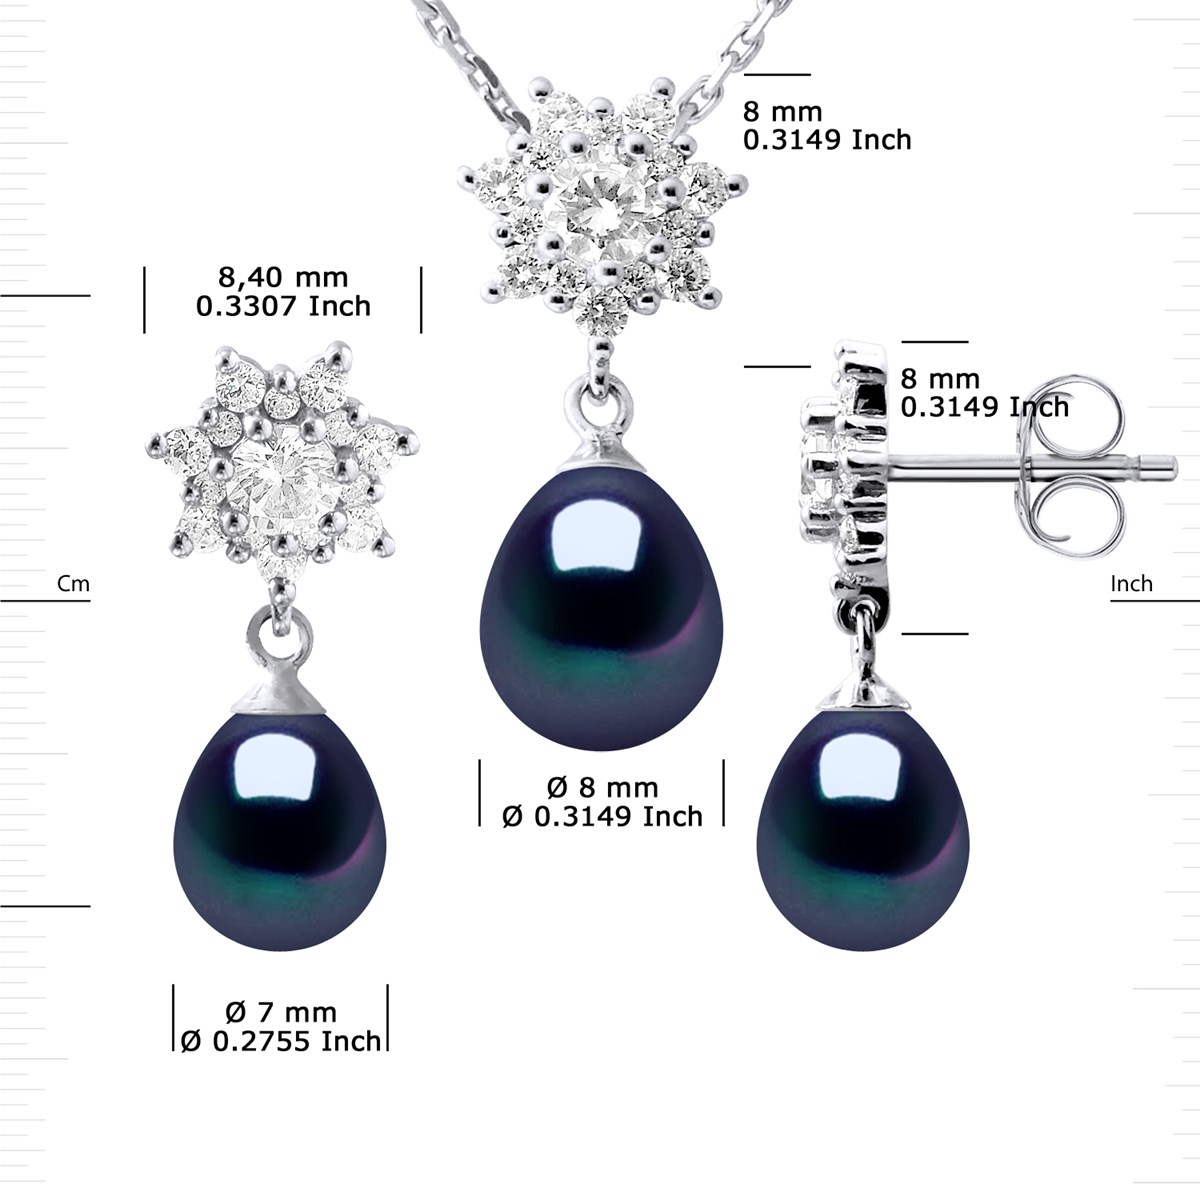 Parure BIARRITZ Collier & Boucles d'Oreilles Pendantes Perles d'Eau Douce Noires Argent 925 - vue 3